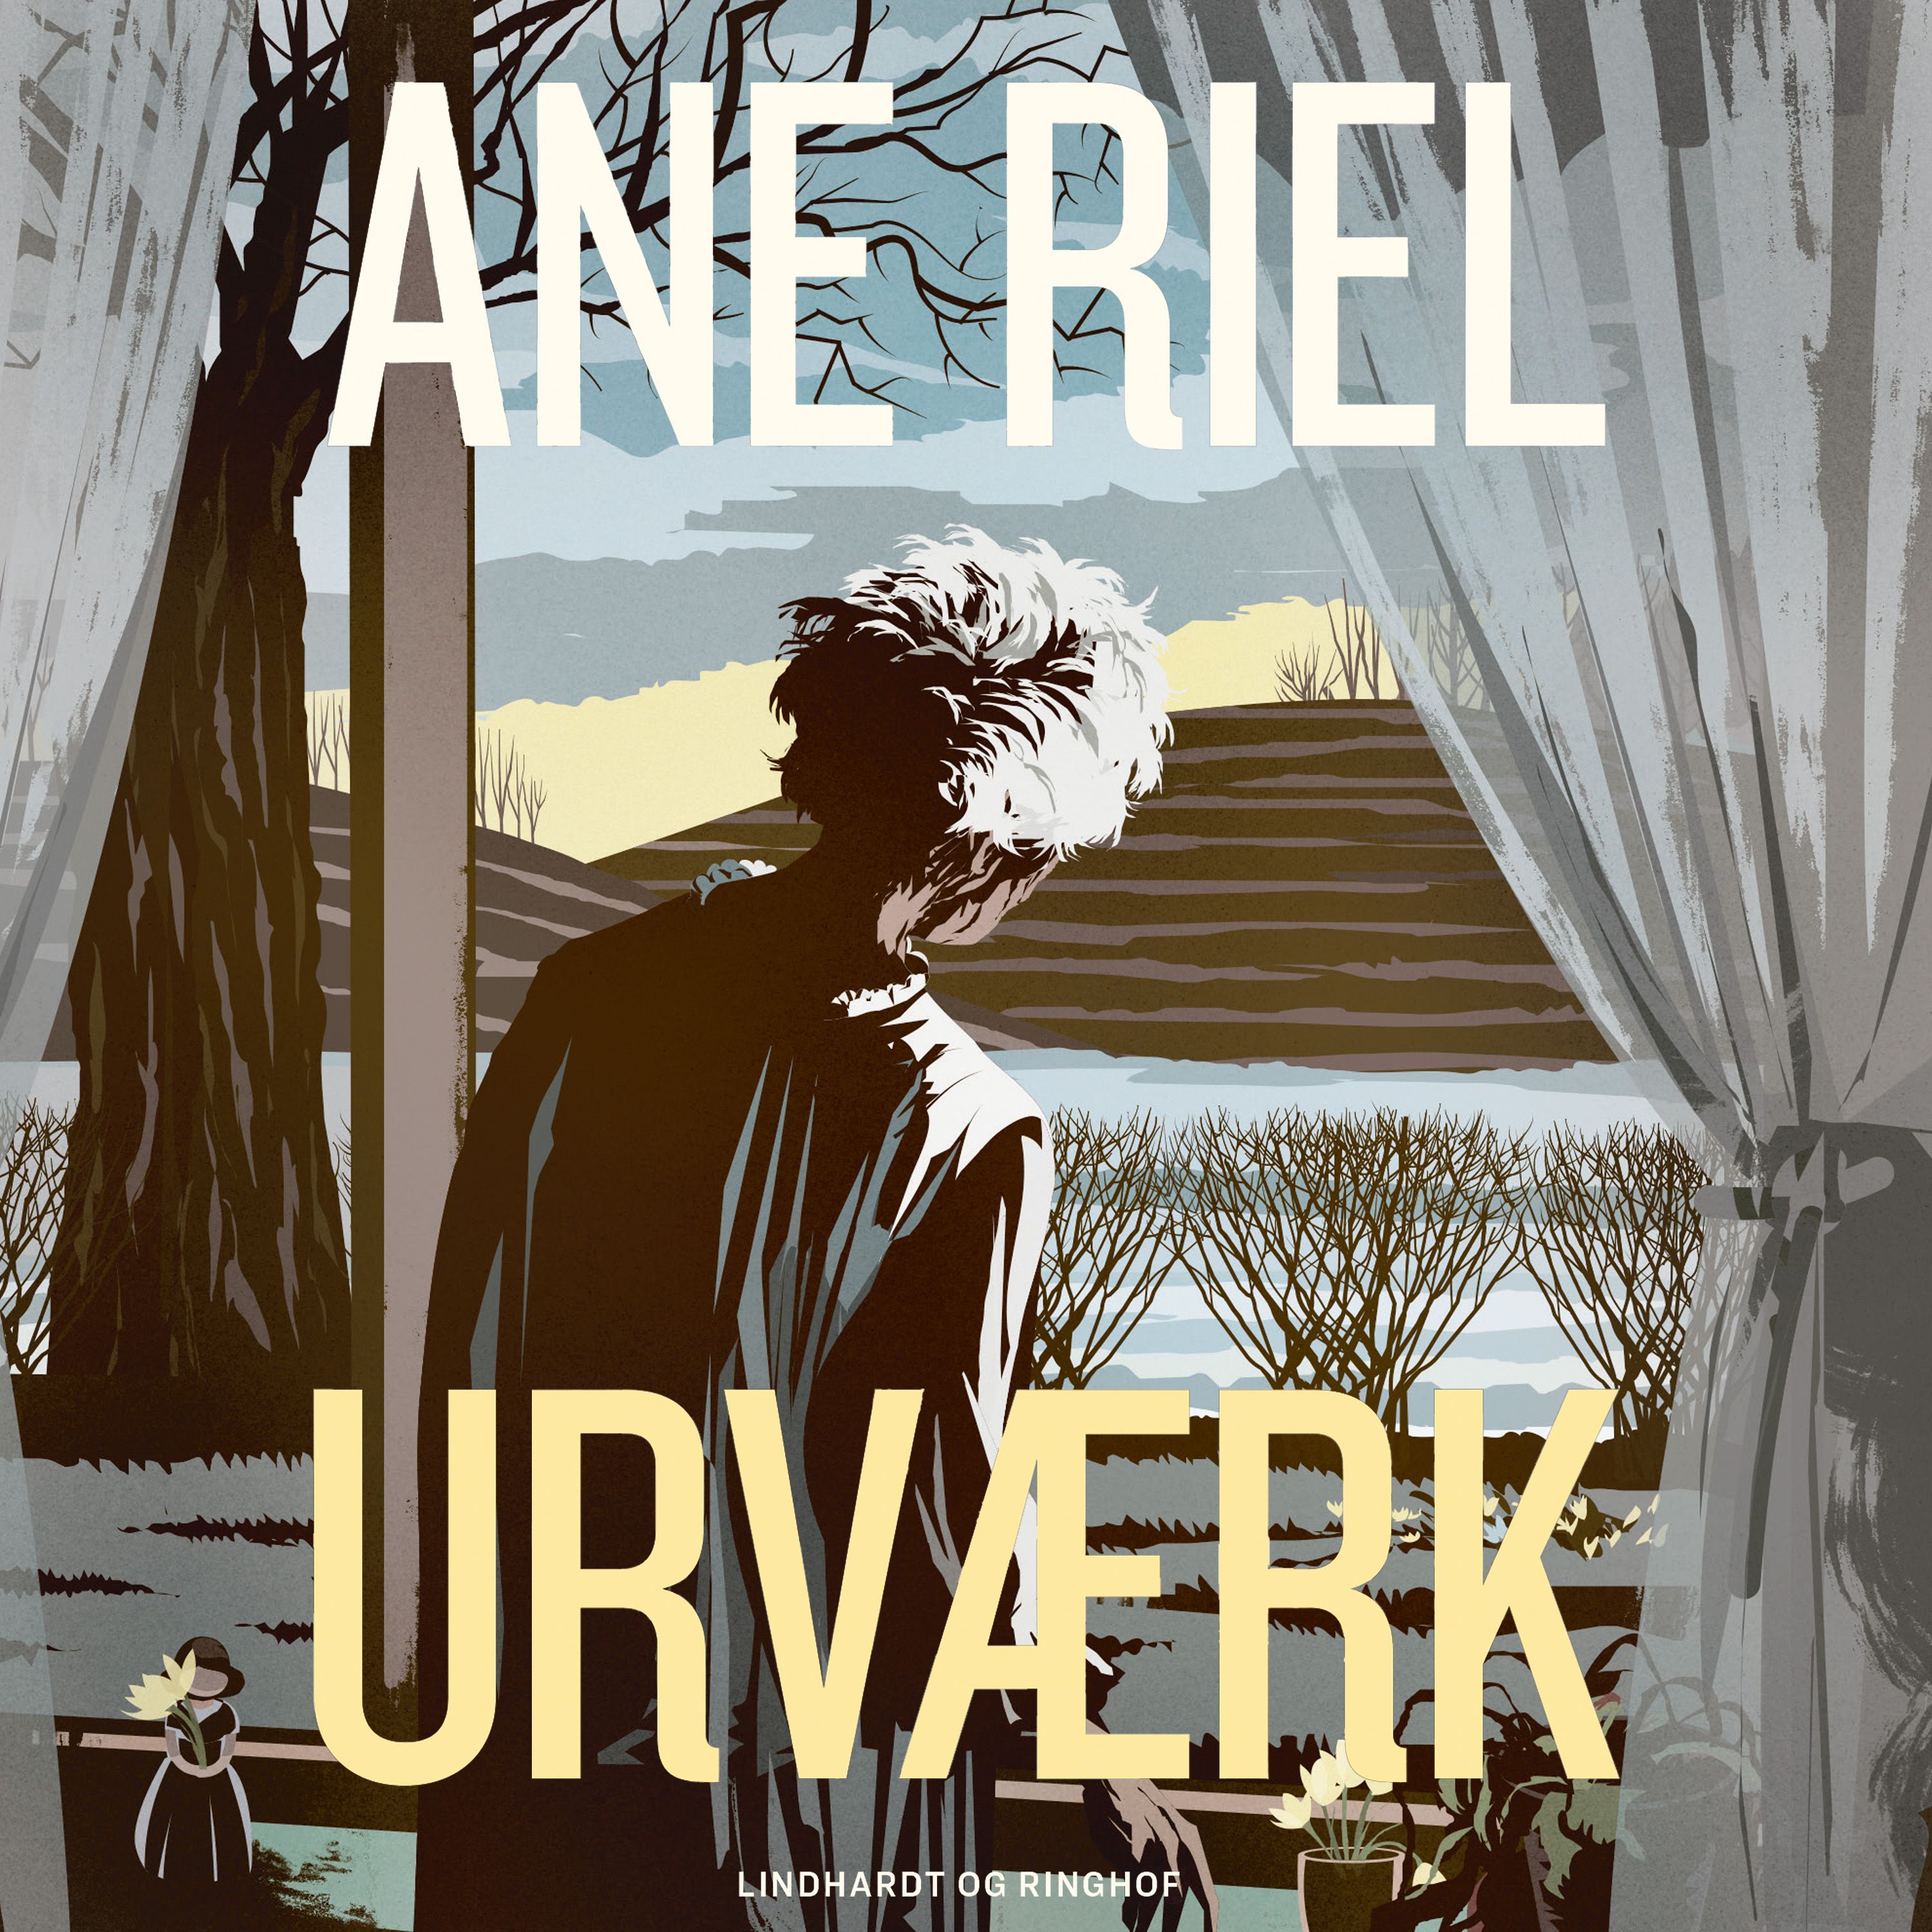 Urværk, ljudbok av Ane Riel